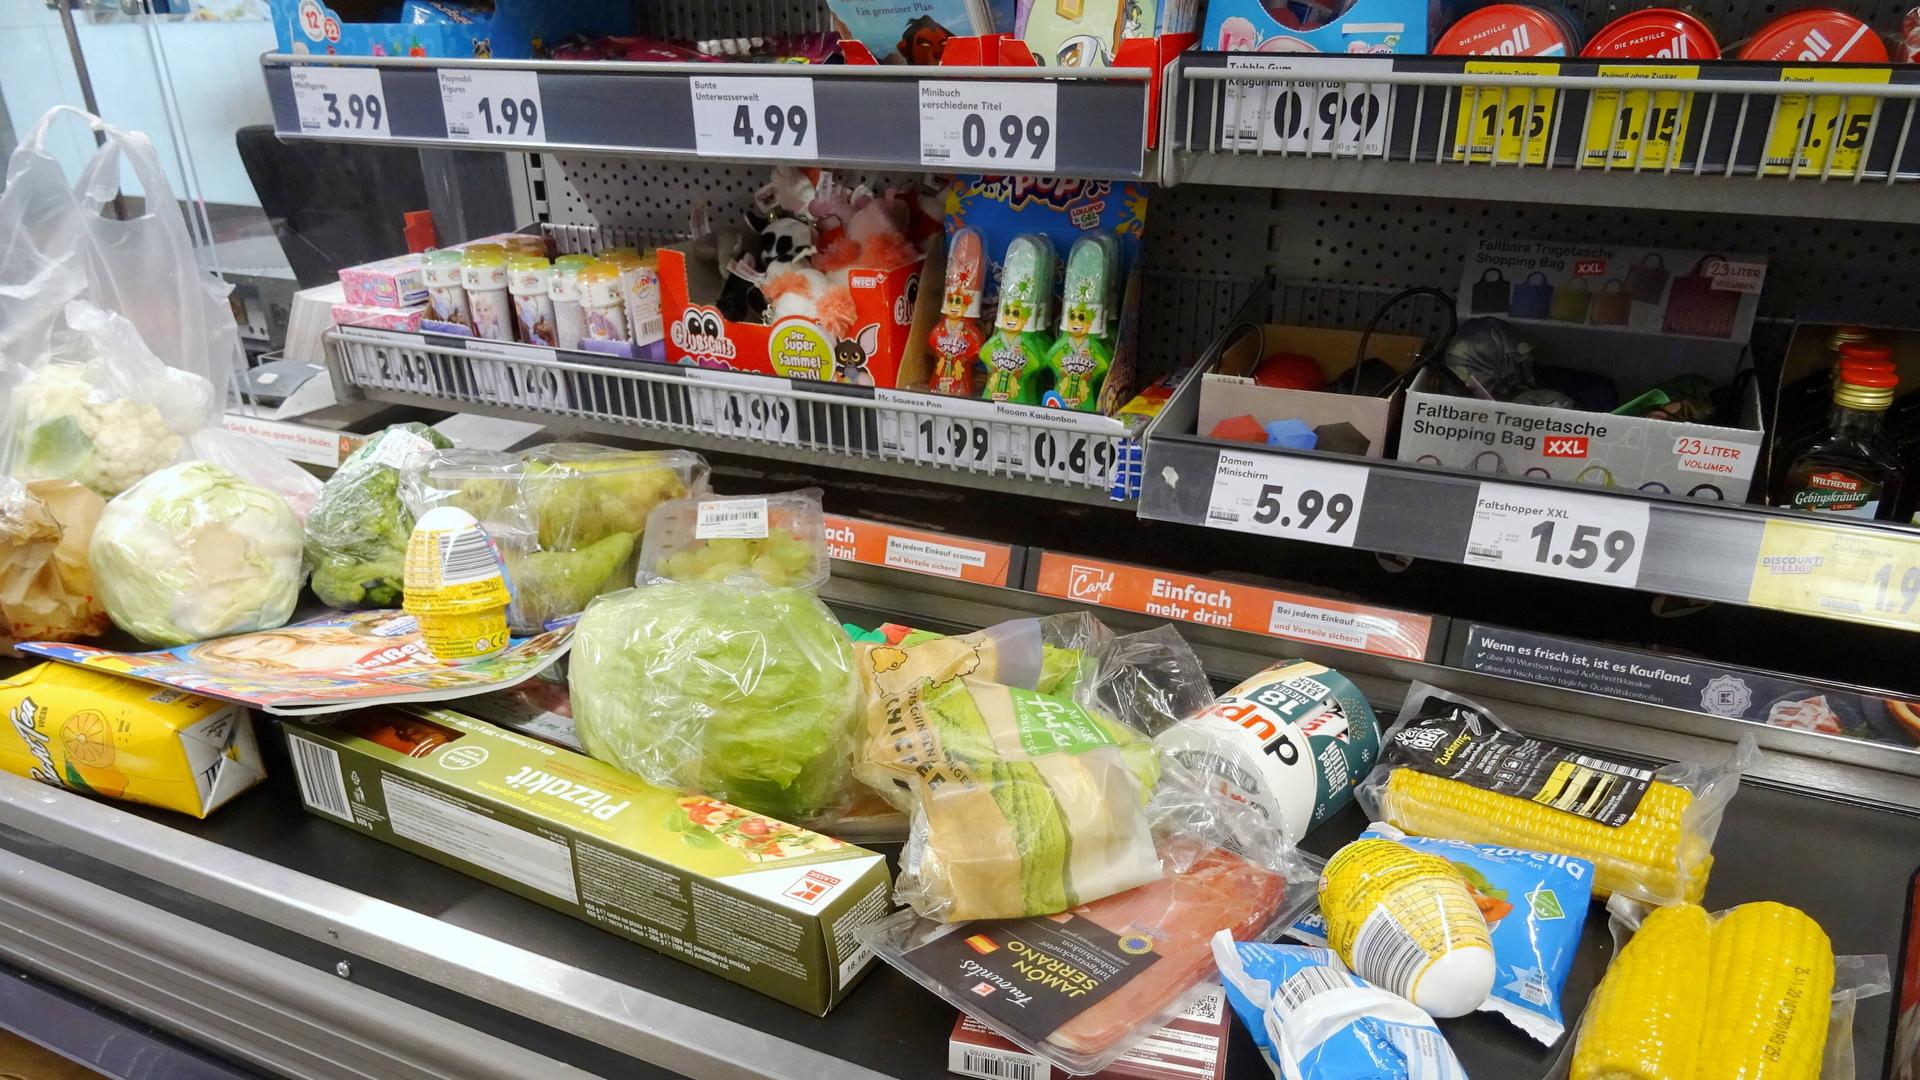 Auf einem Band im Supermarkt liegen verschiedene Lebensmittel.